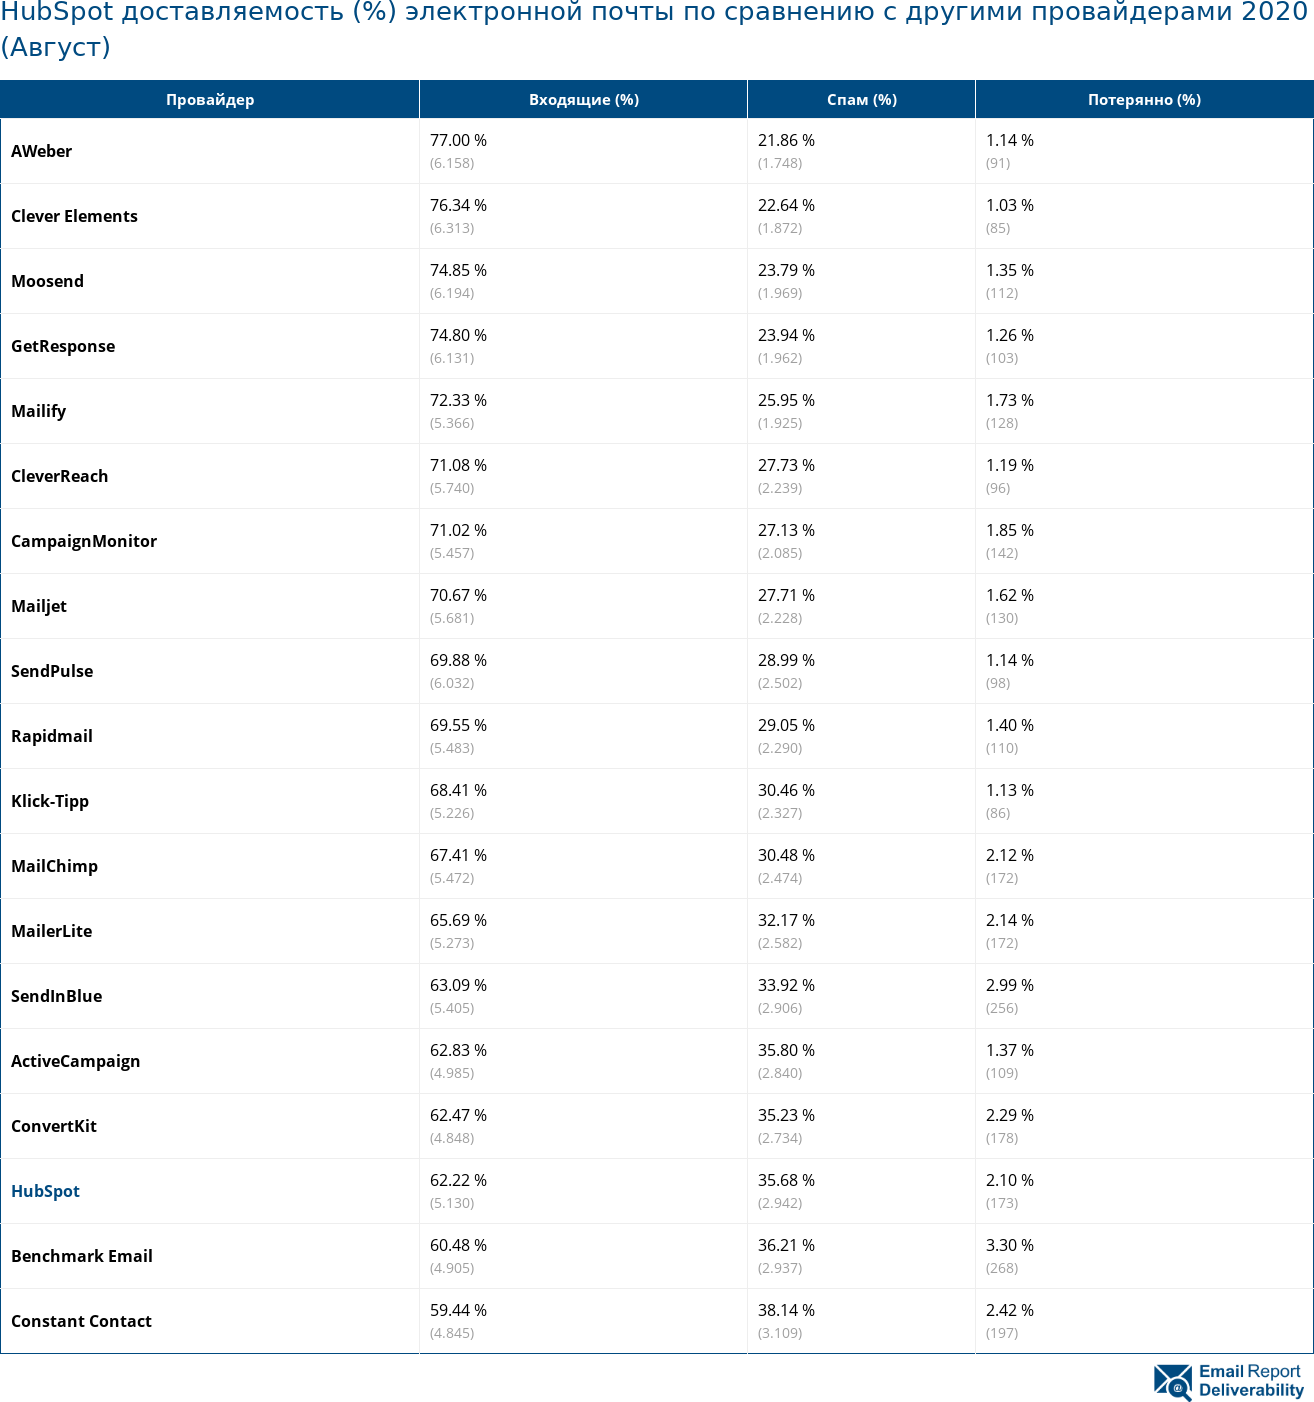 HubSpot доставляемость (%) электронной почты по сравнению с другими провайдерами 2020 (Август)